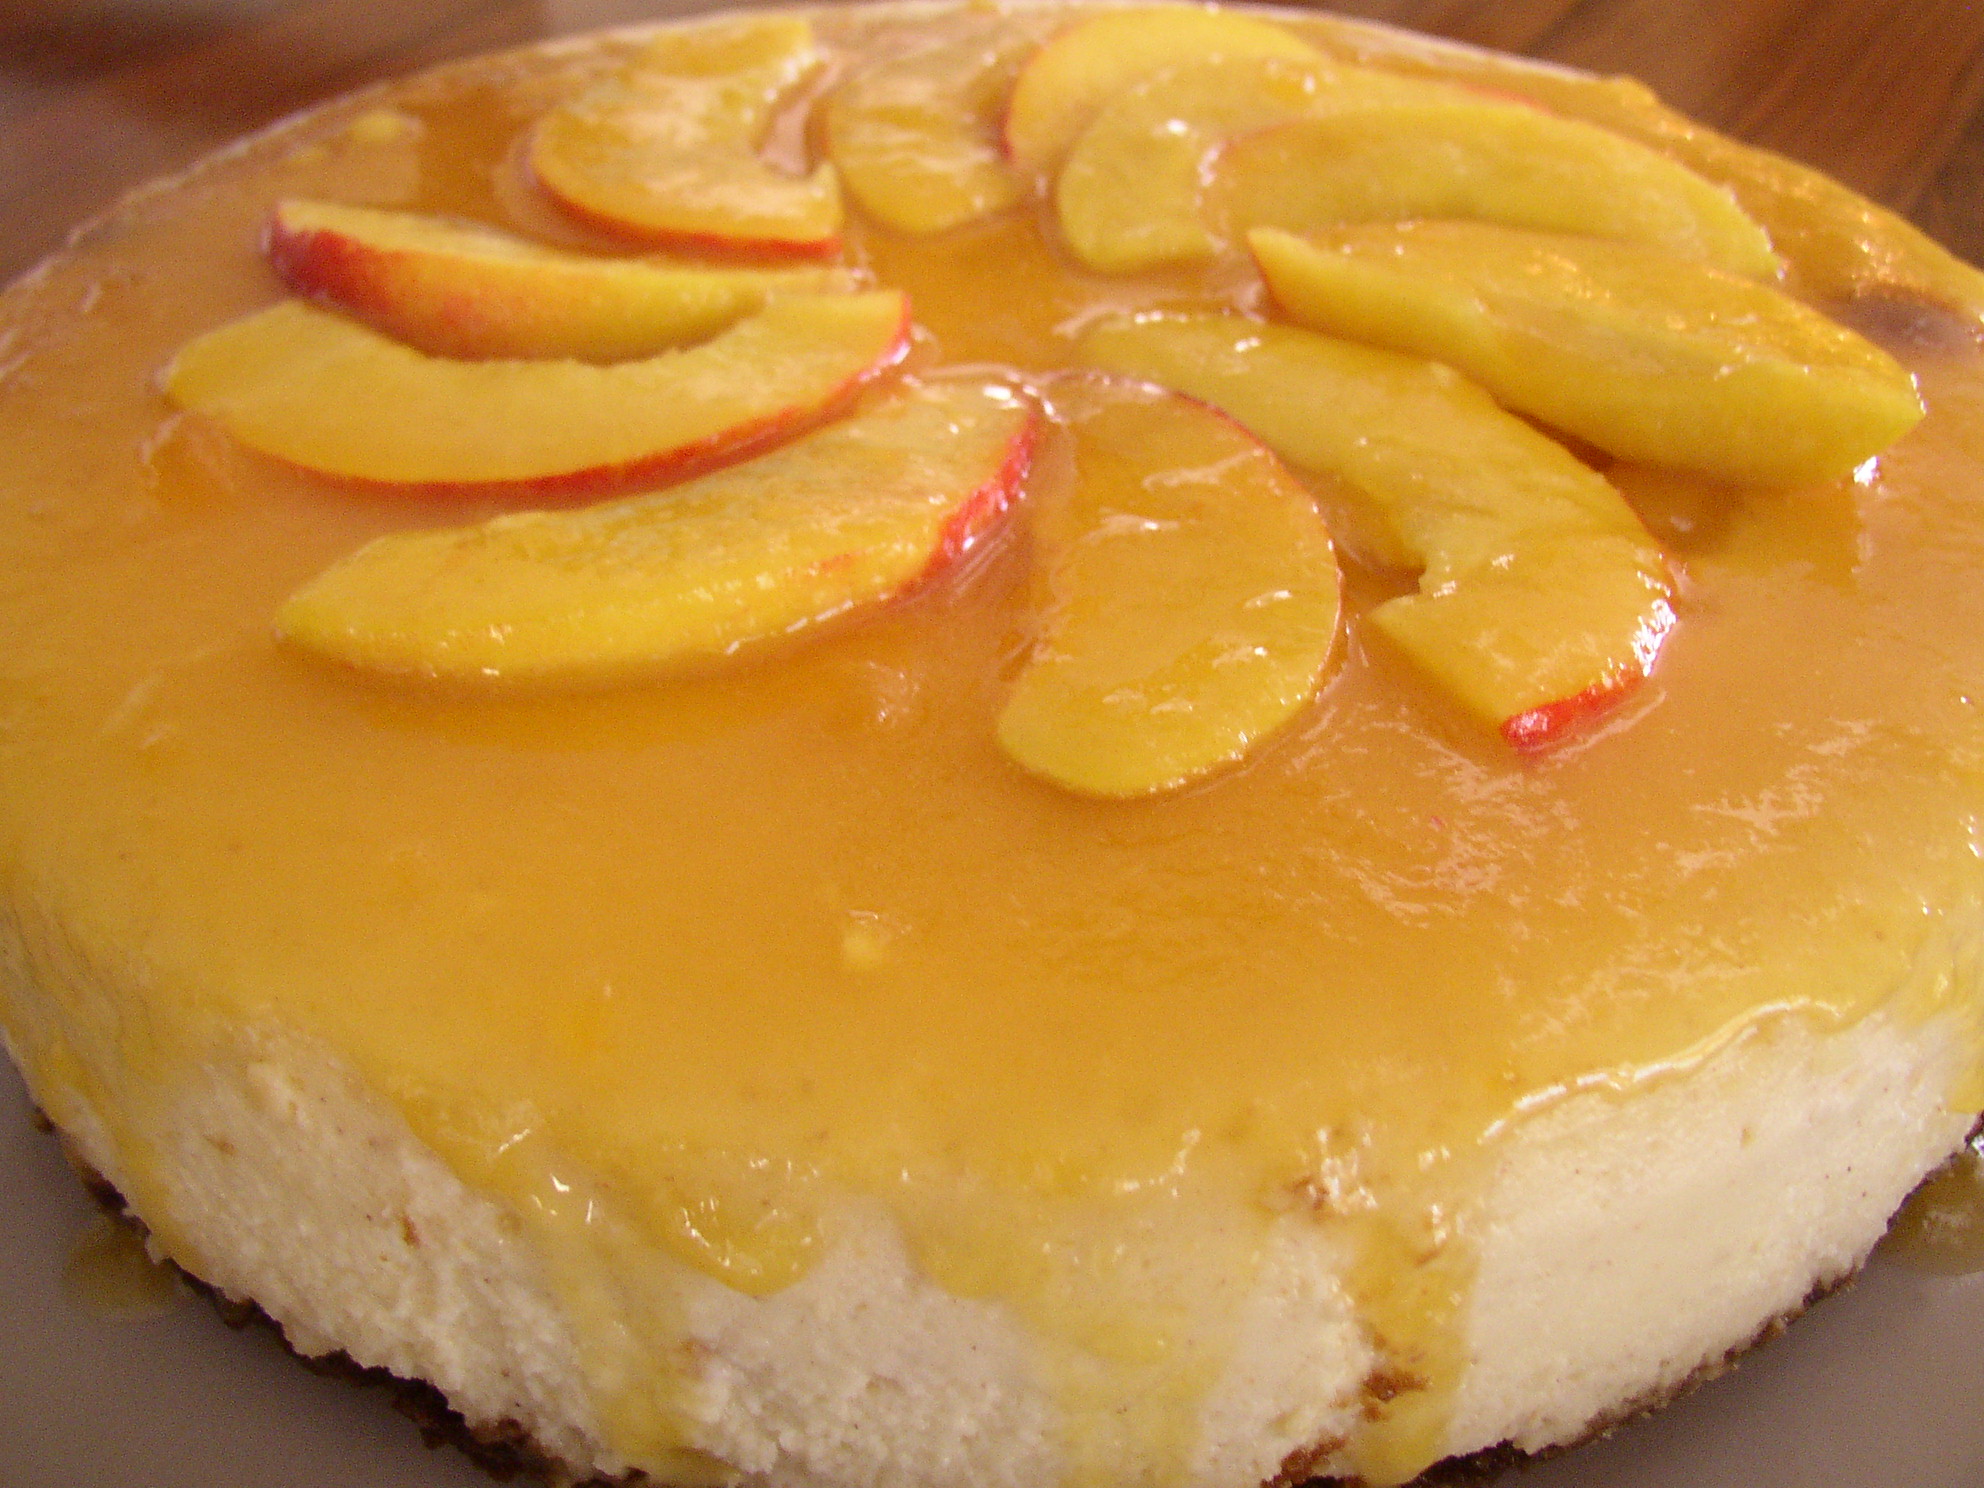 Food Recipe: How to Make Peach Cheesecake